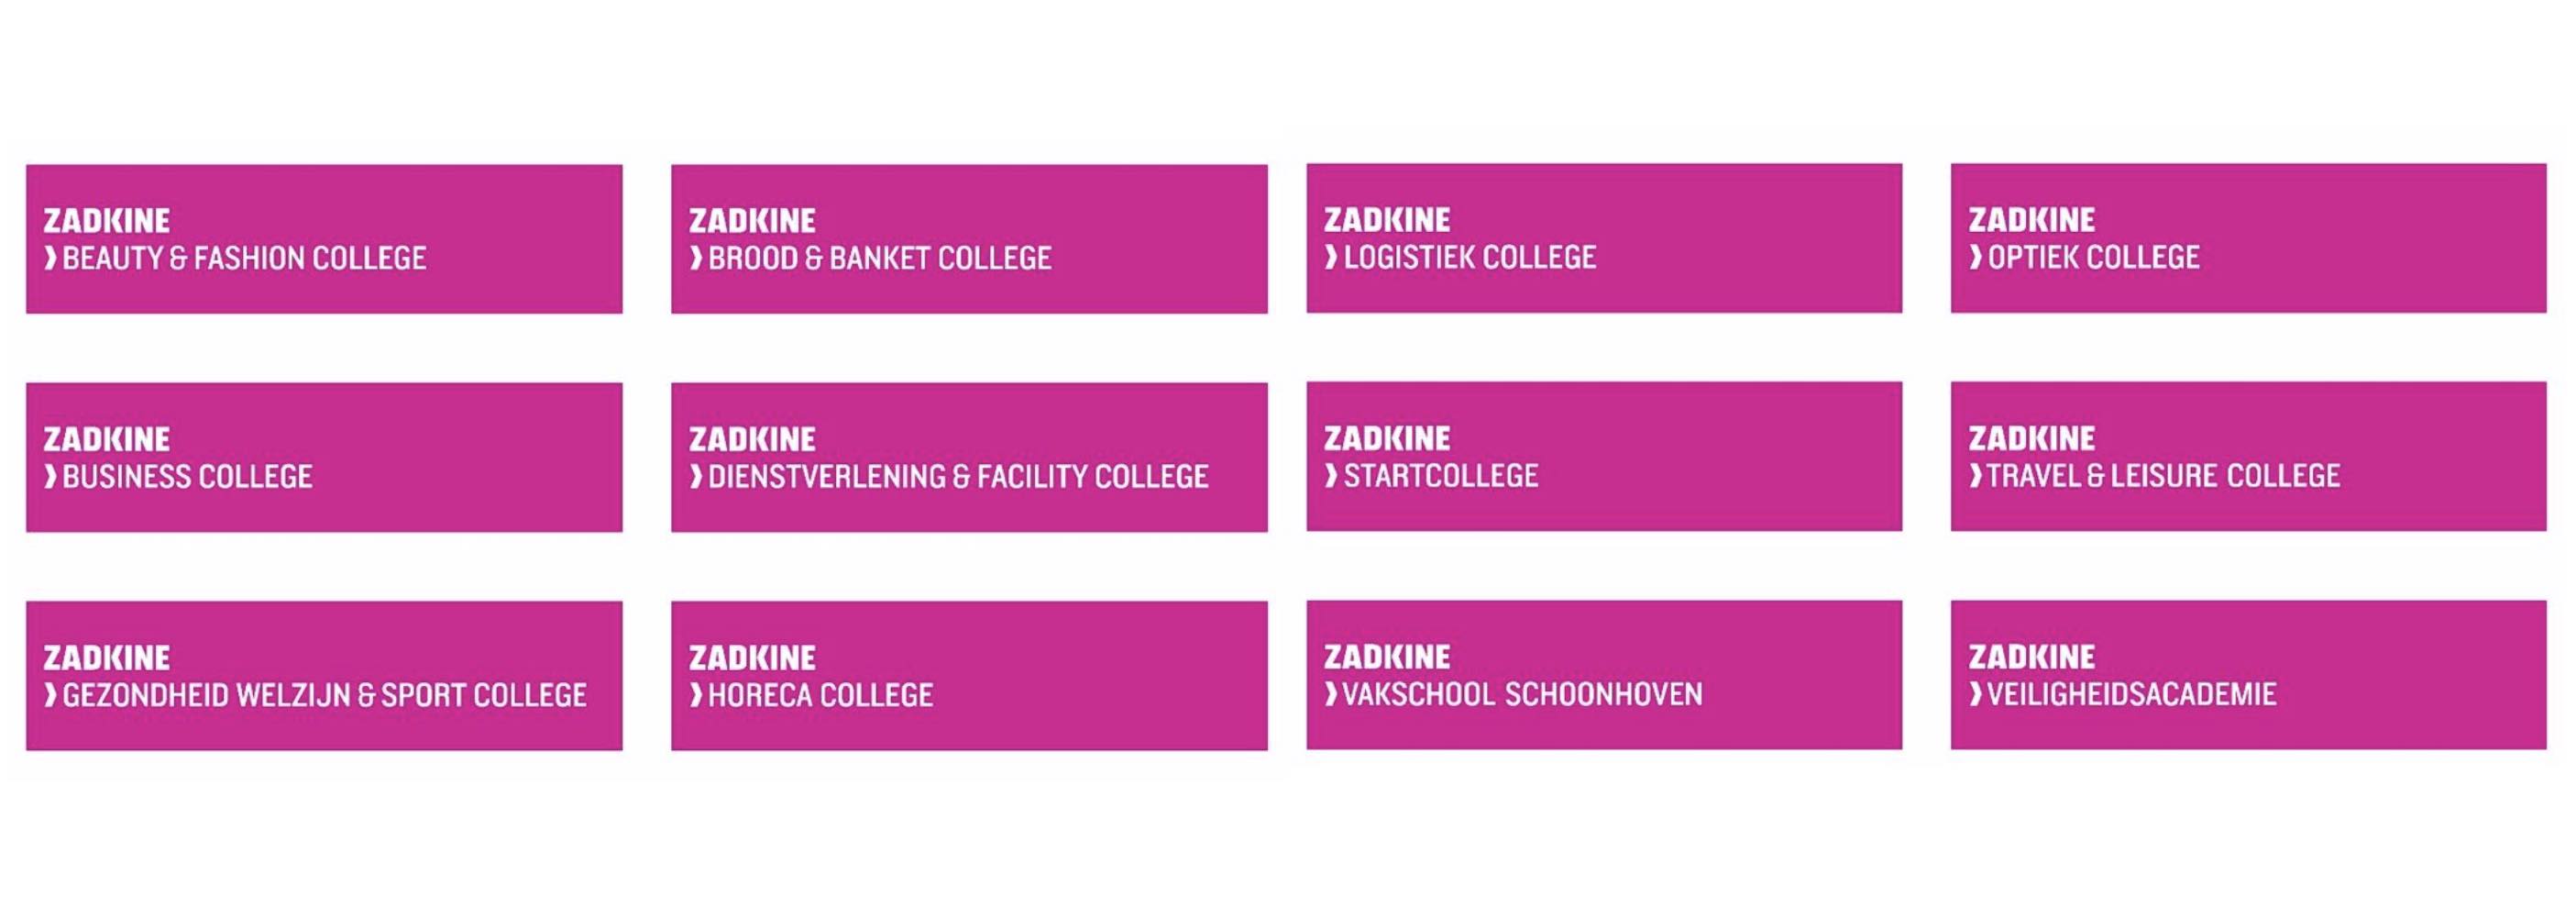 ROC Zadkine positionering onderwijs colleges